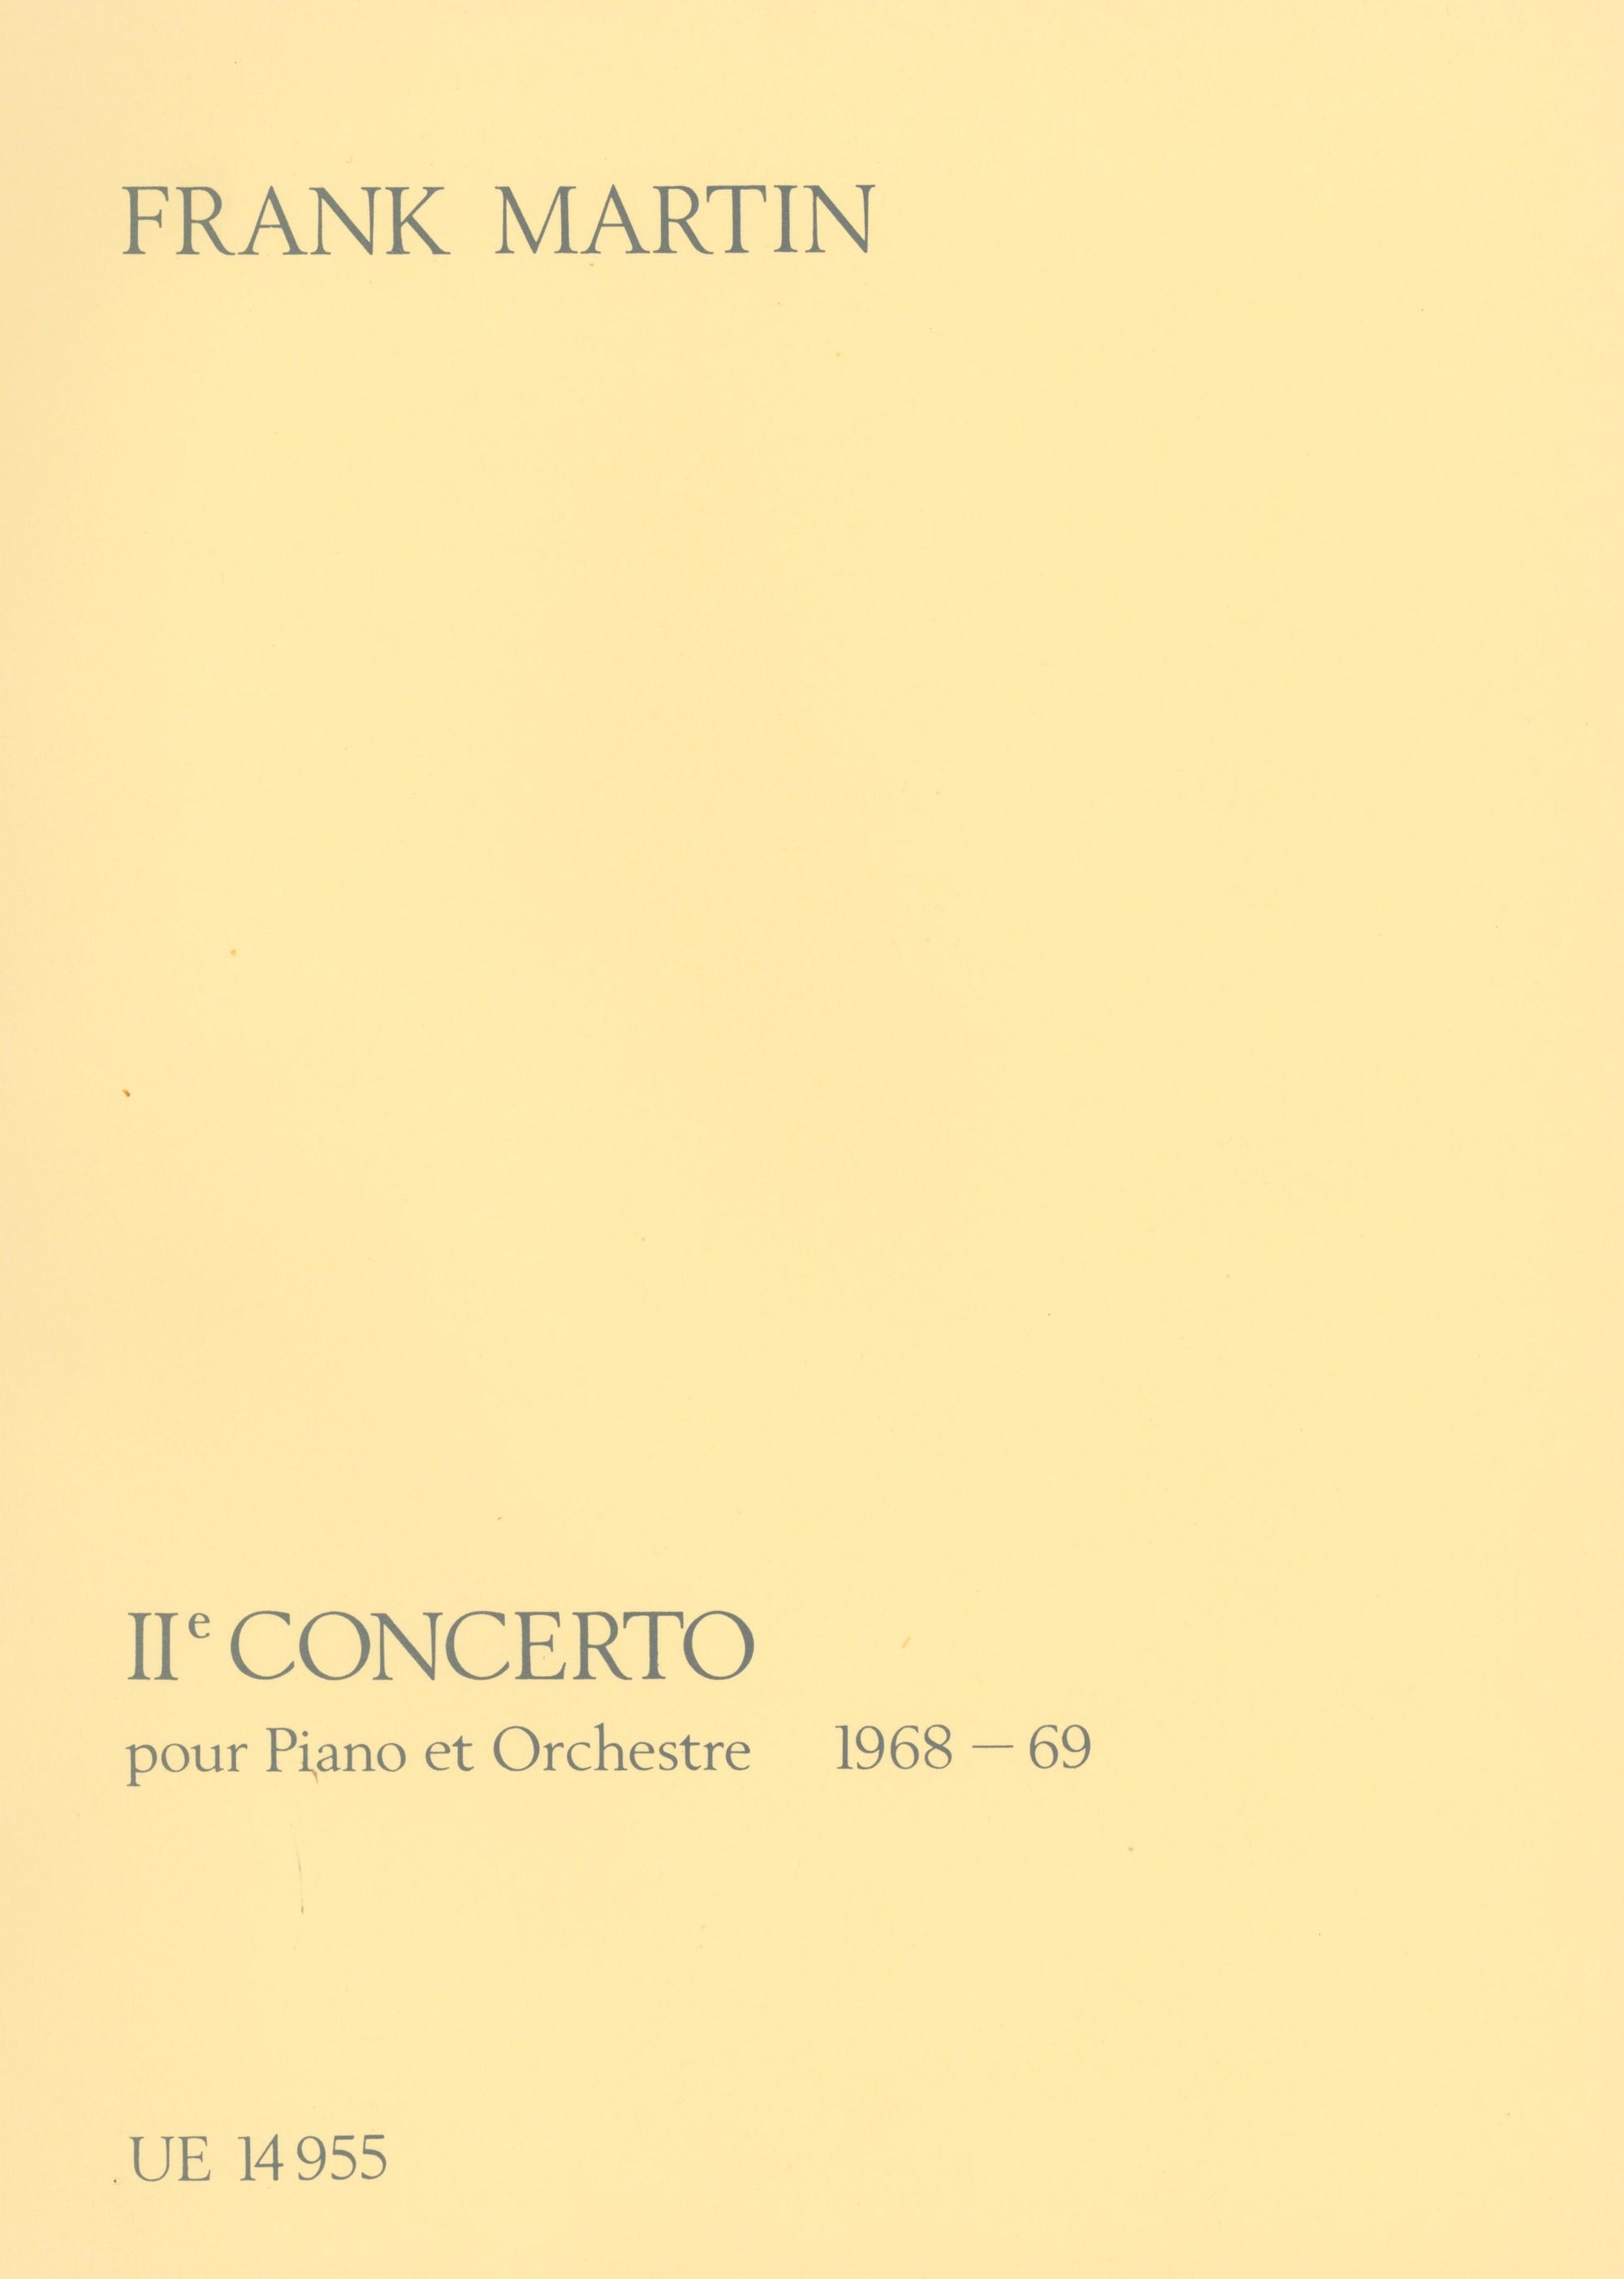 F. Martin: Piano Concerto No. 2